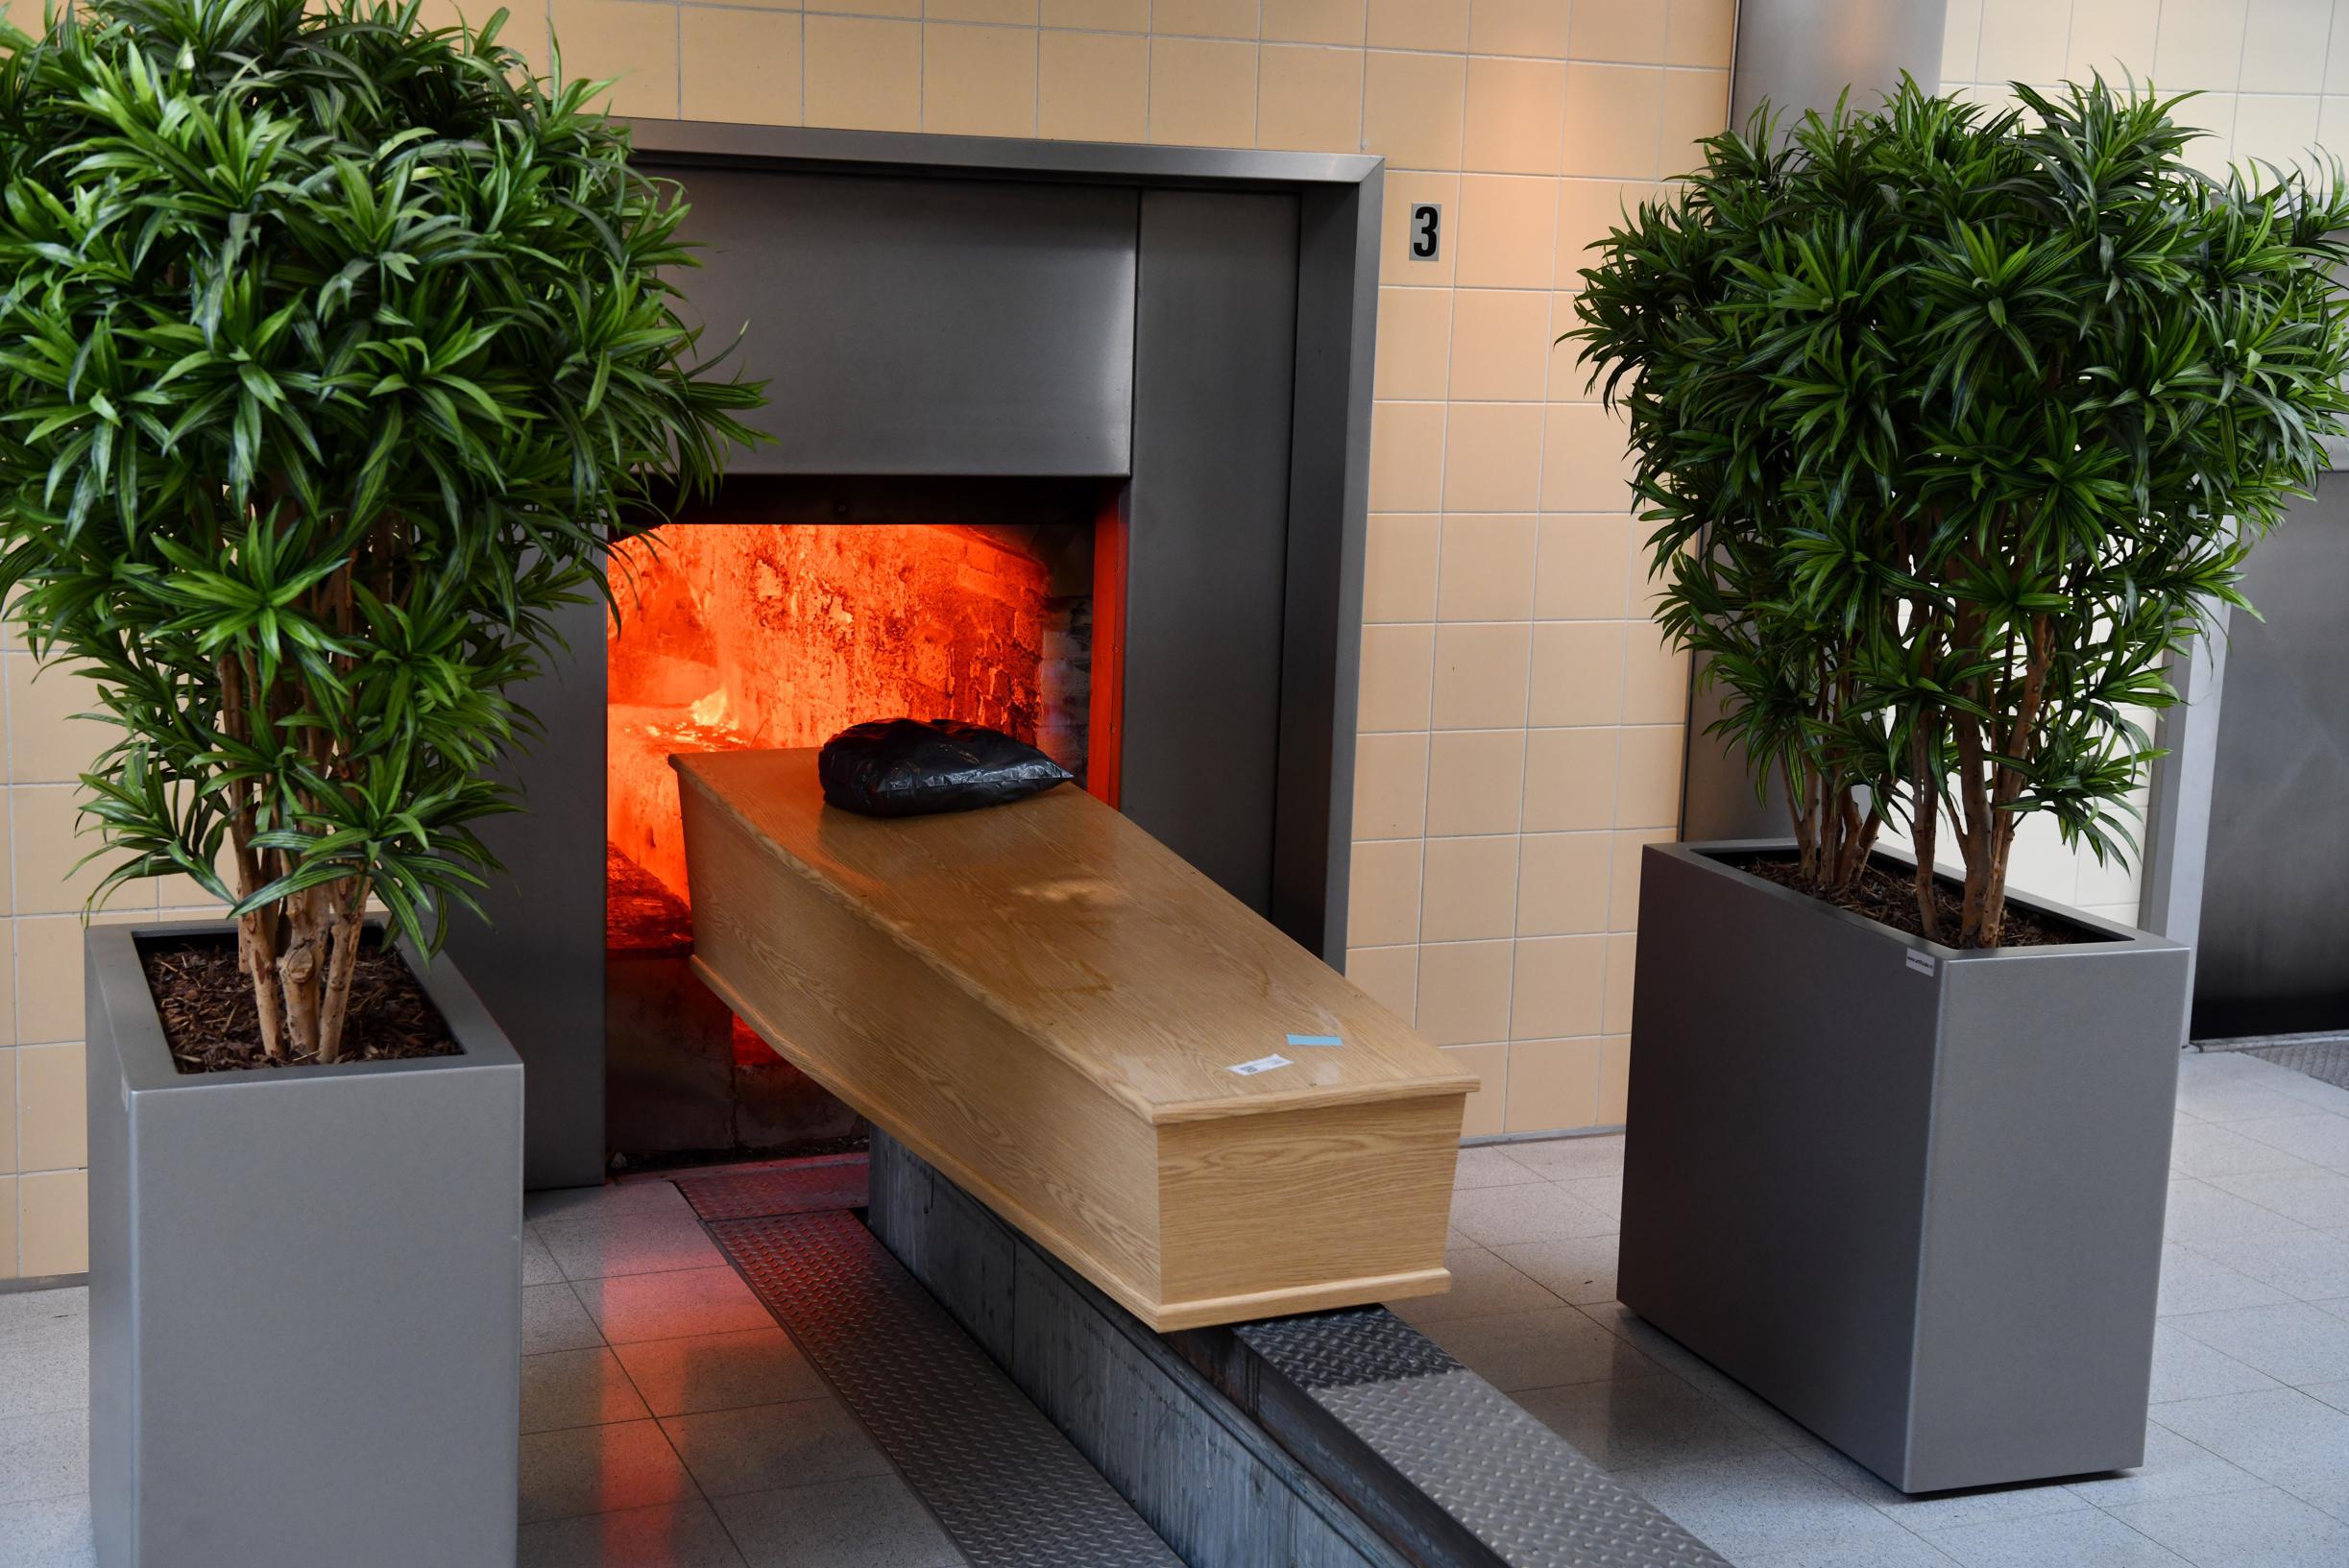 Nooit eerder zo veel crematies in provincie: “Het is goedkoper én vraagt minder onderhoud”